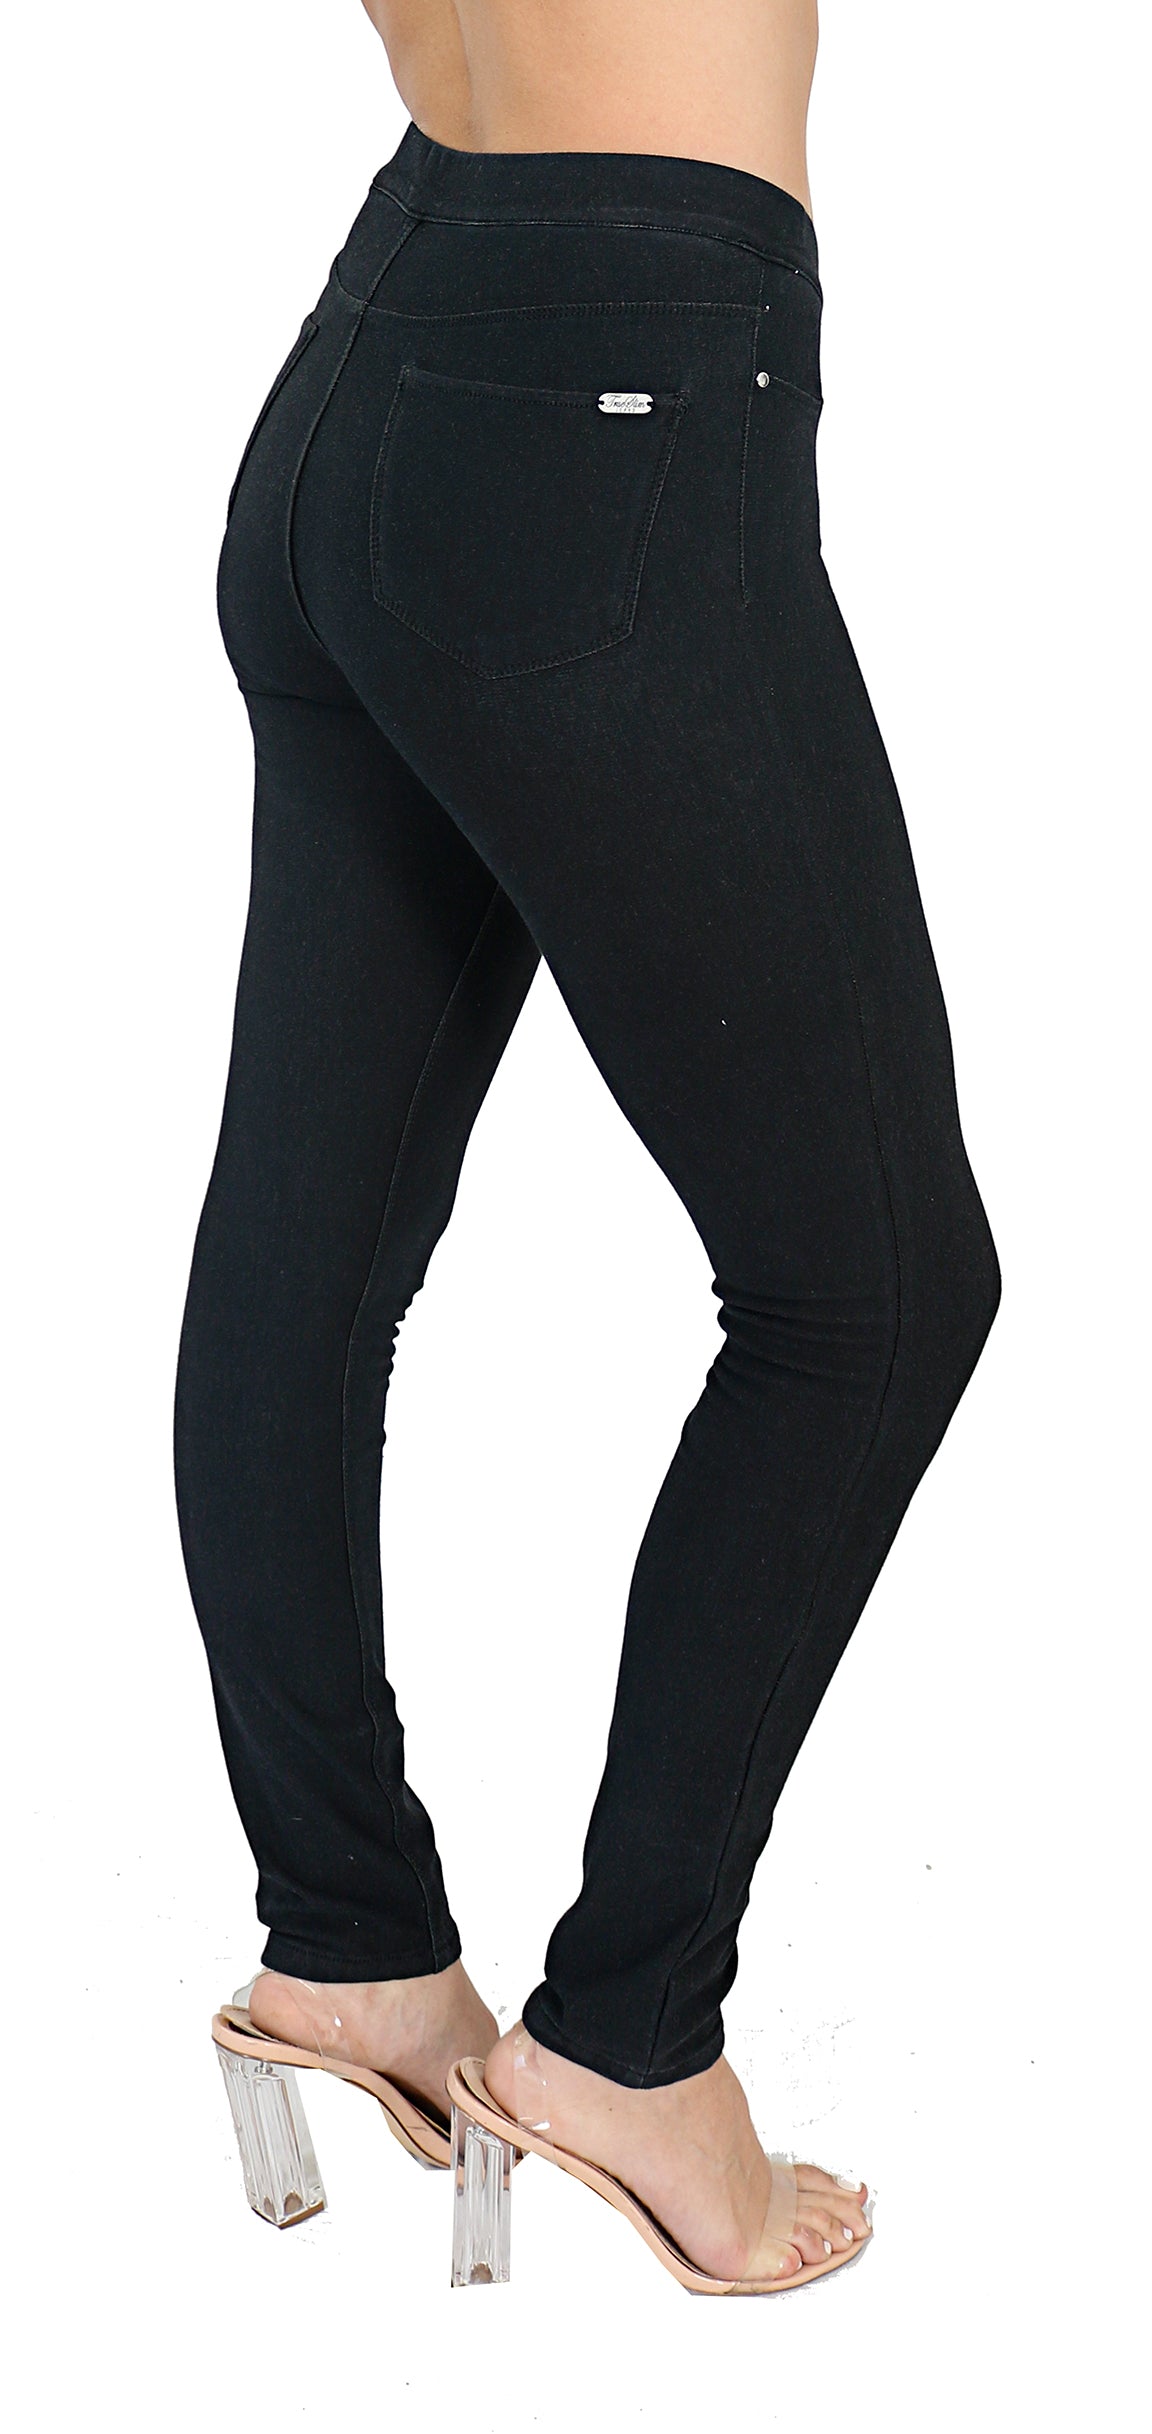 black-jeans Black jeans jeggings with back pockets